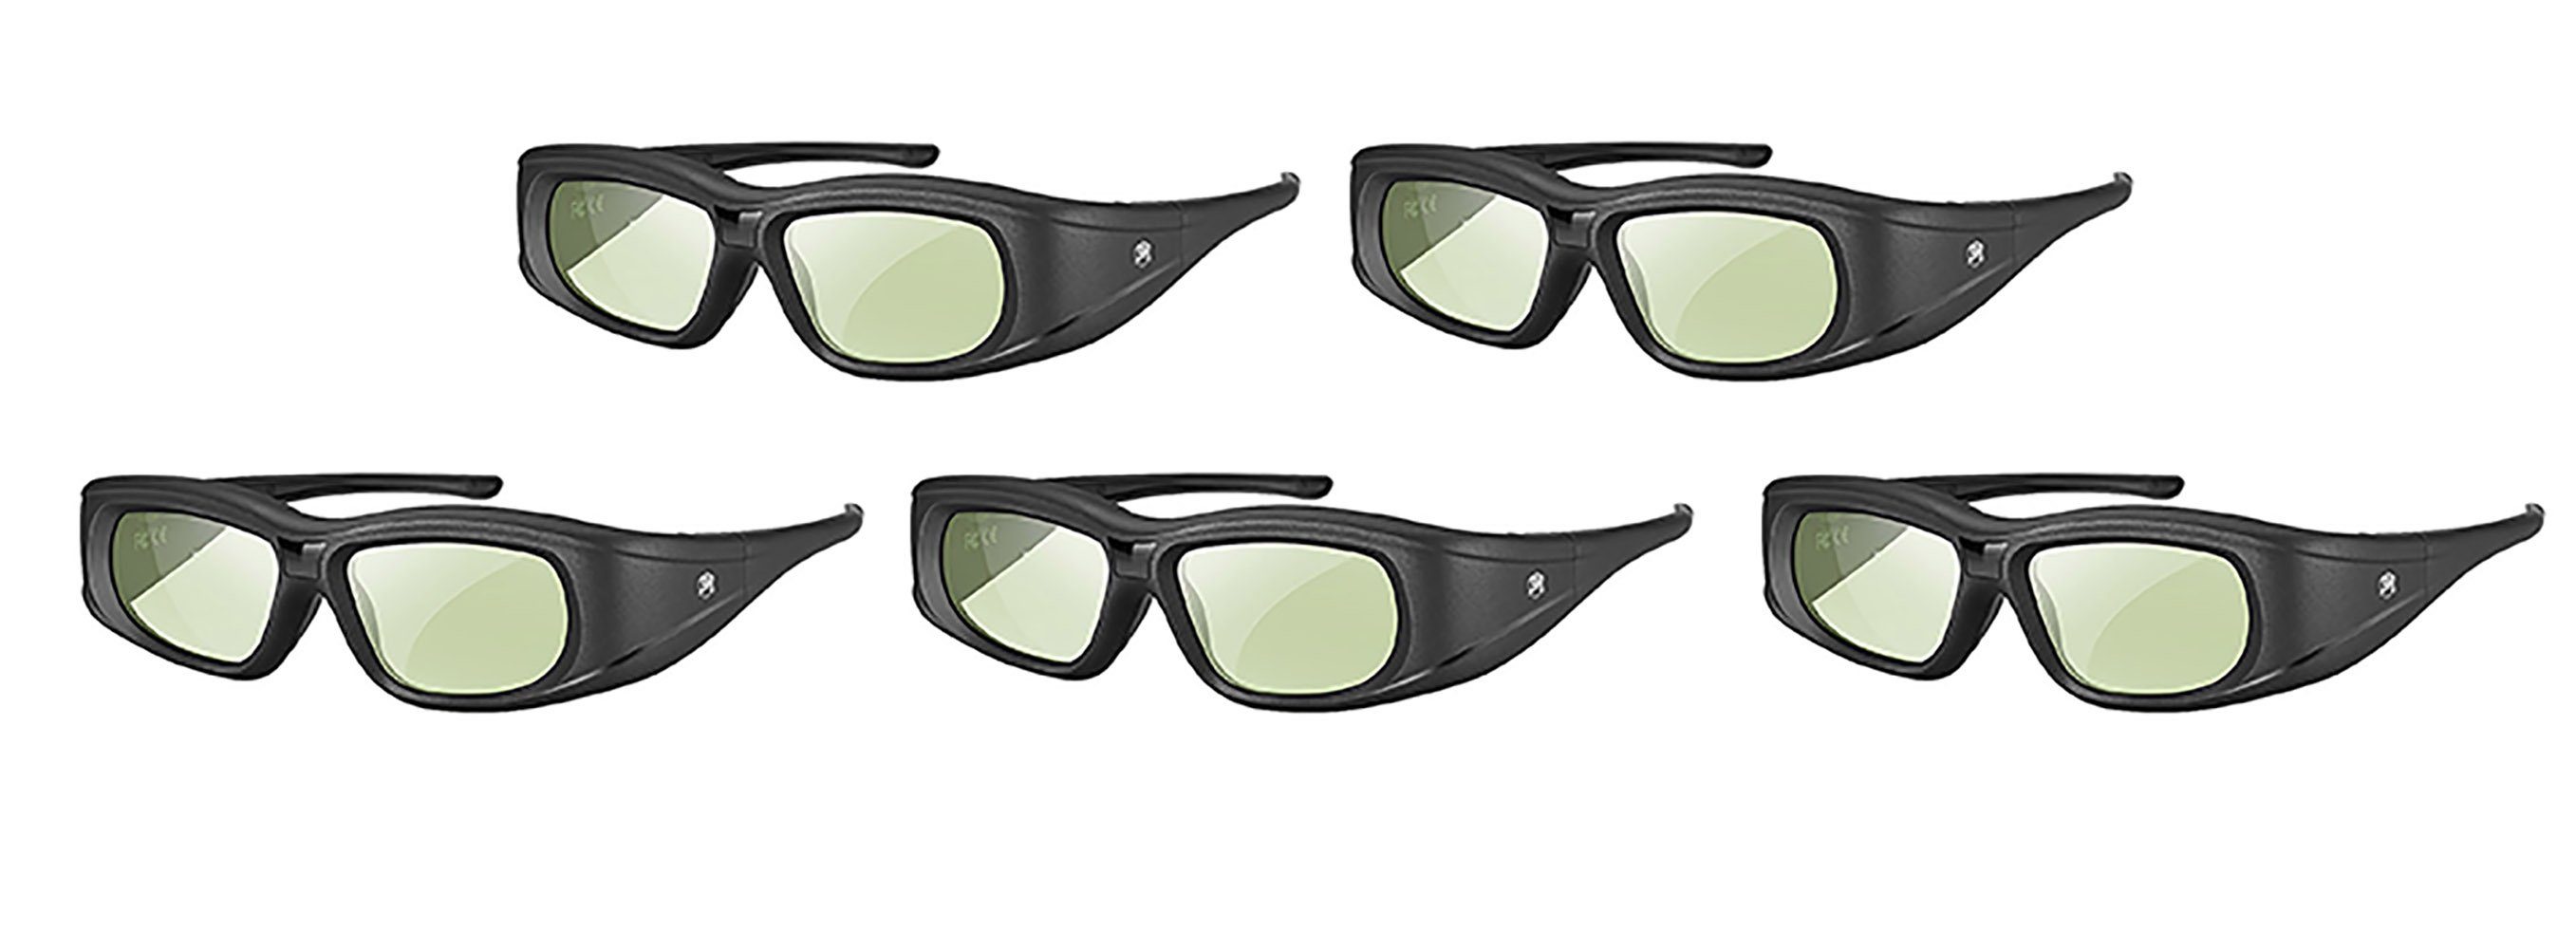 TPFNet 3D-Brille Aktive Shutterbrille für Bluetooth / RF 3D TVs, Samsung,  Panasonic, Epson, etc. - wiederaufladbar - Schwarz - 5 Stück, Superleicht  und kaum spürbar. Perfekt für 3D-Fans